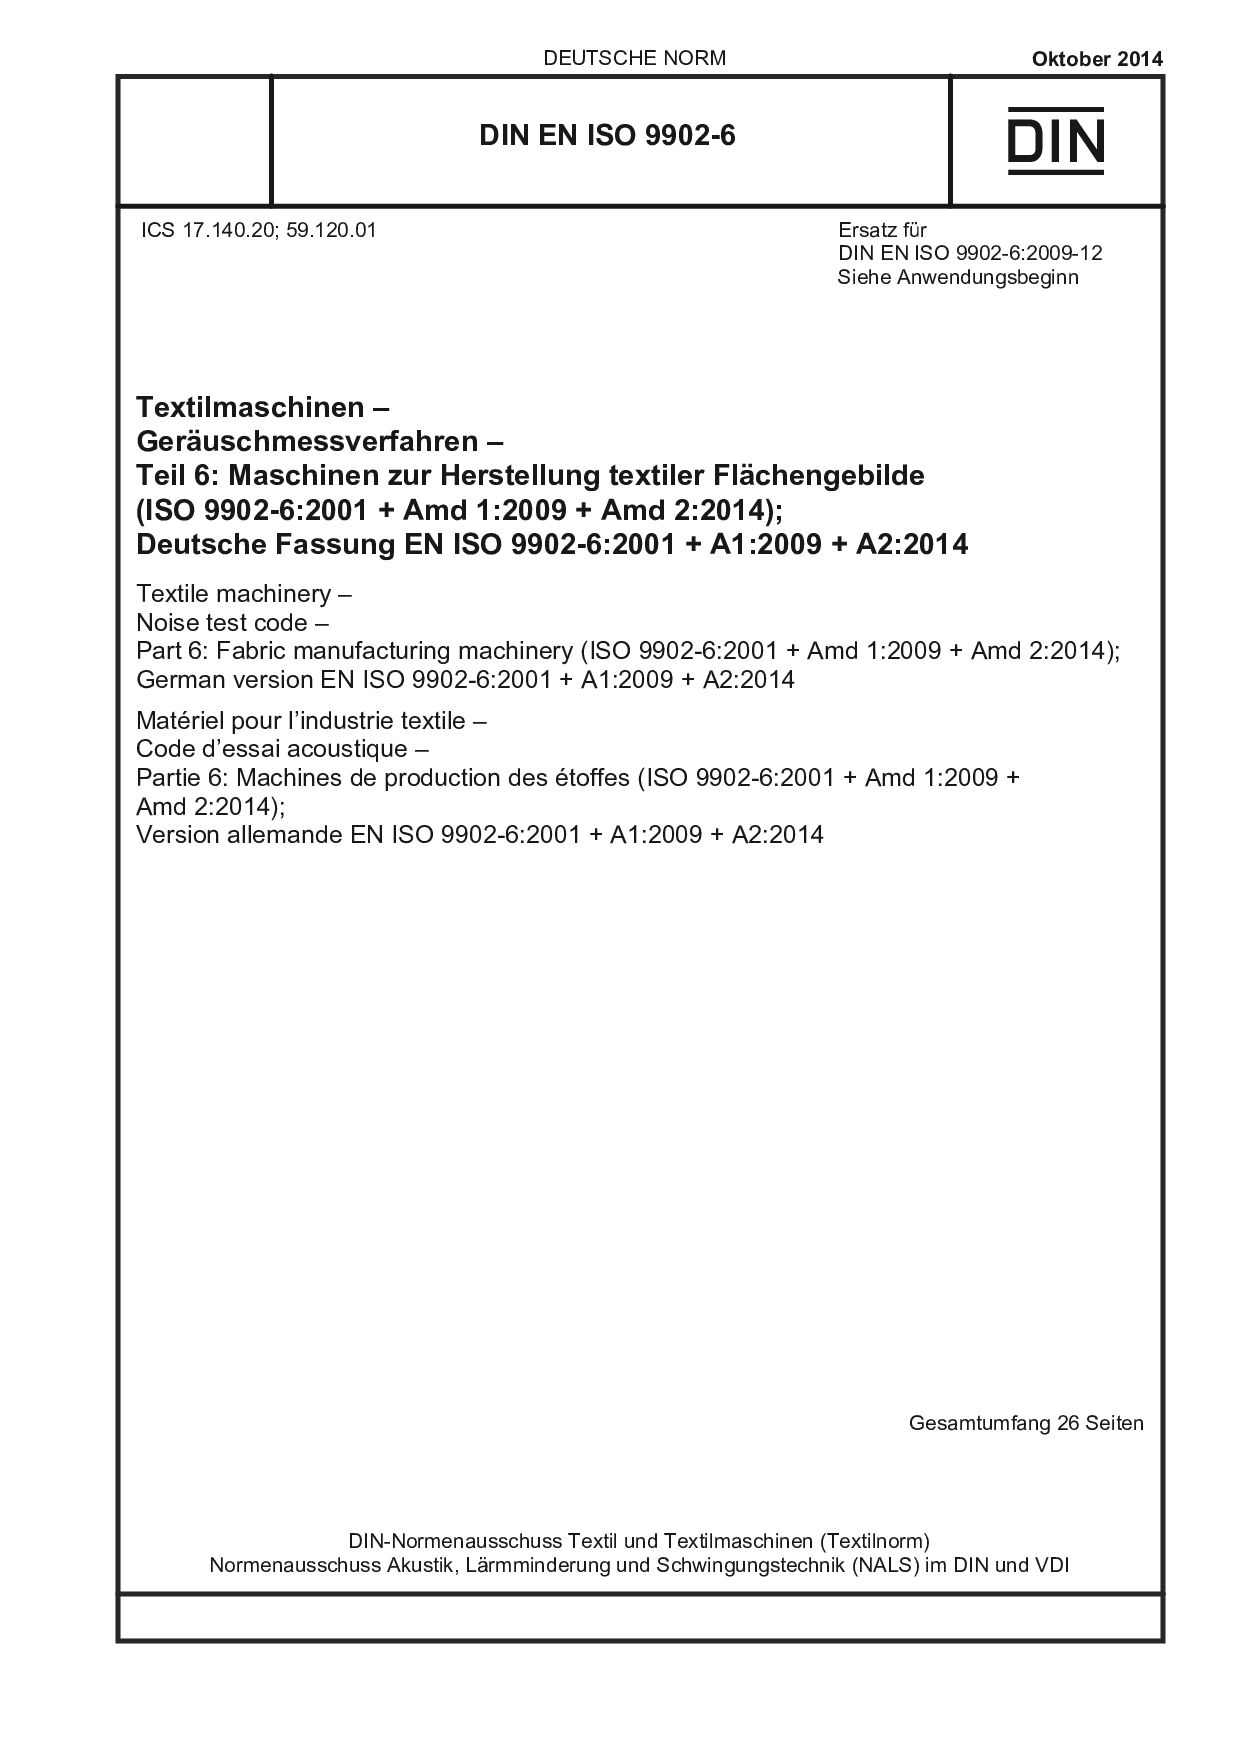 DIN EN ISO 9902-6:2014